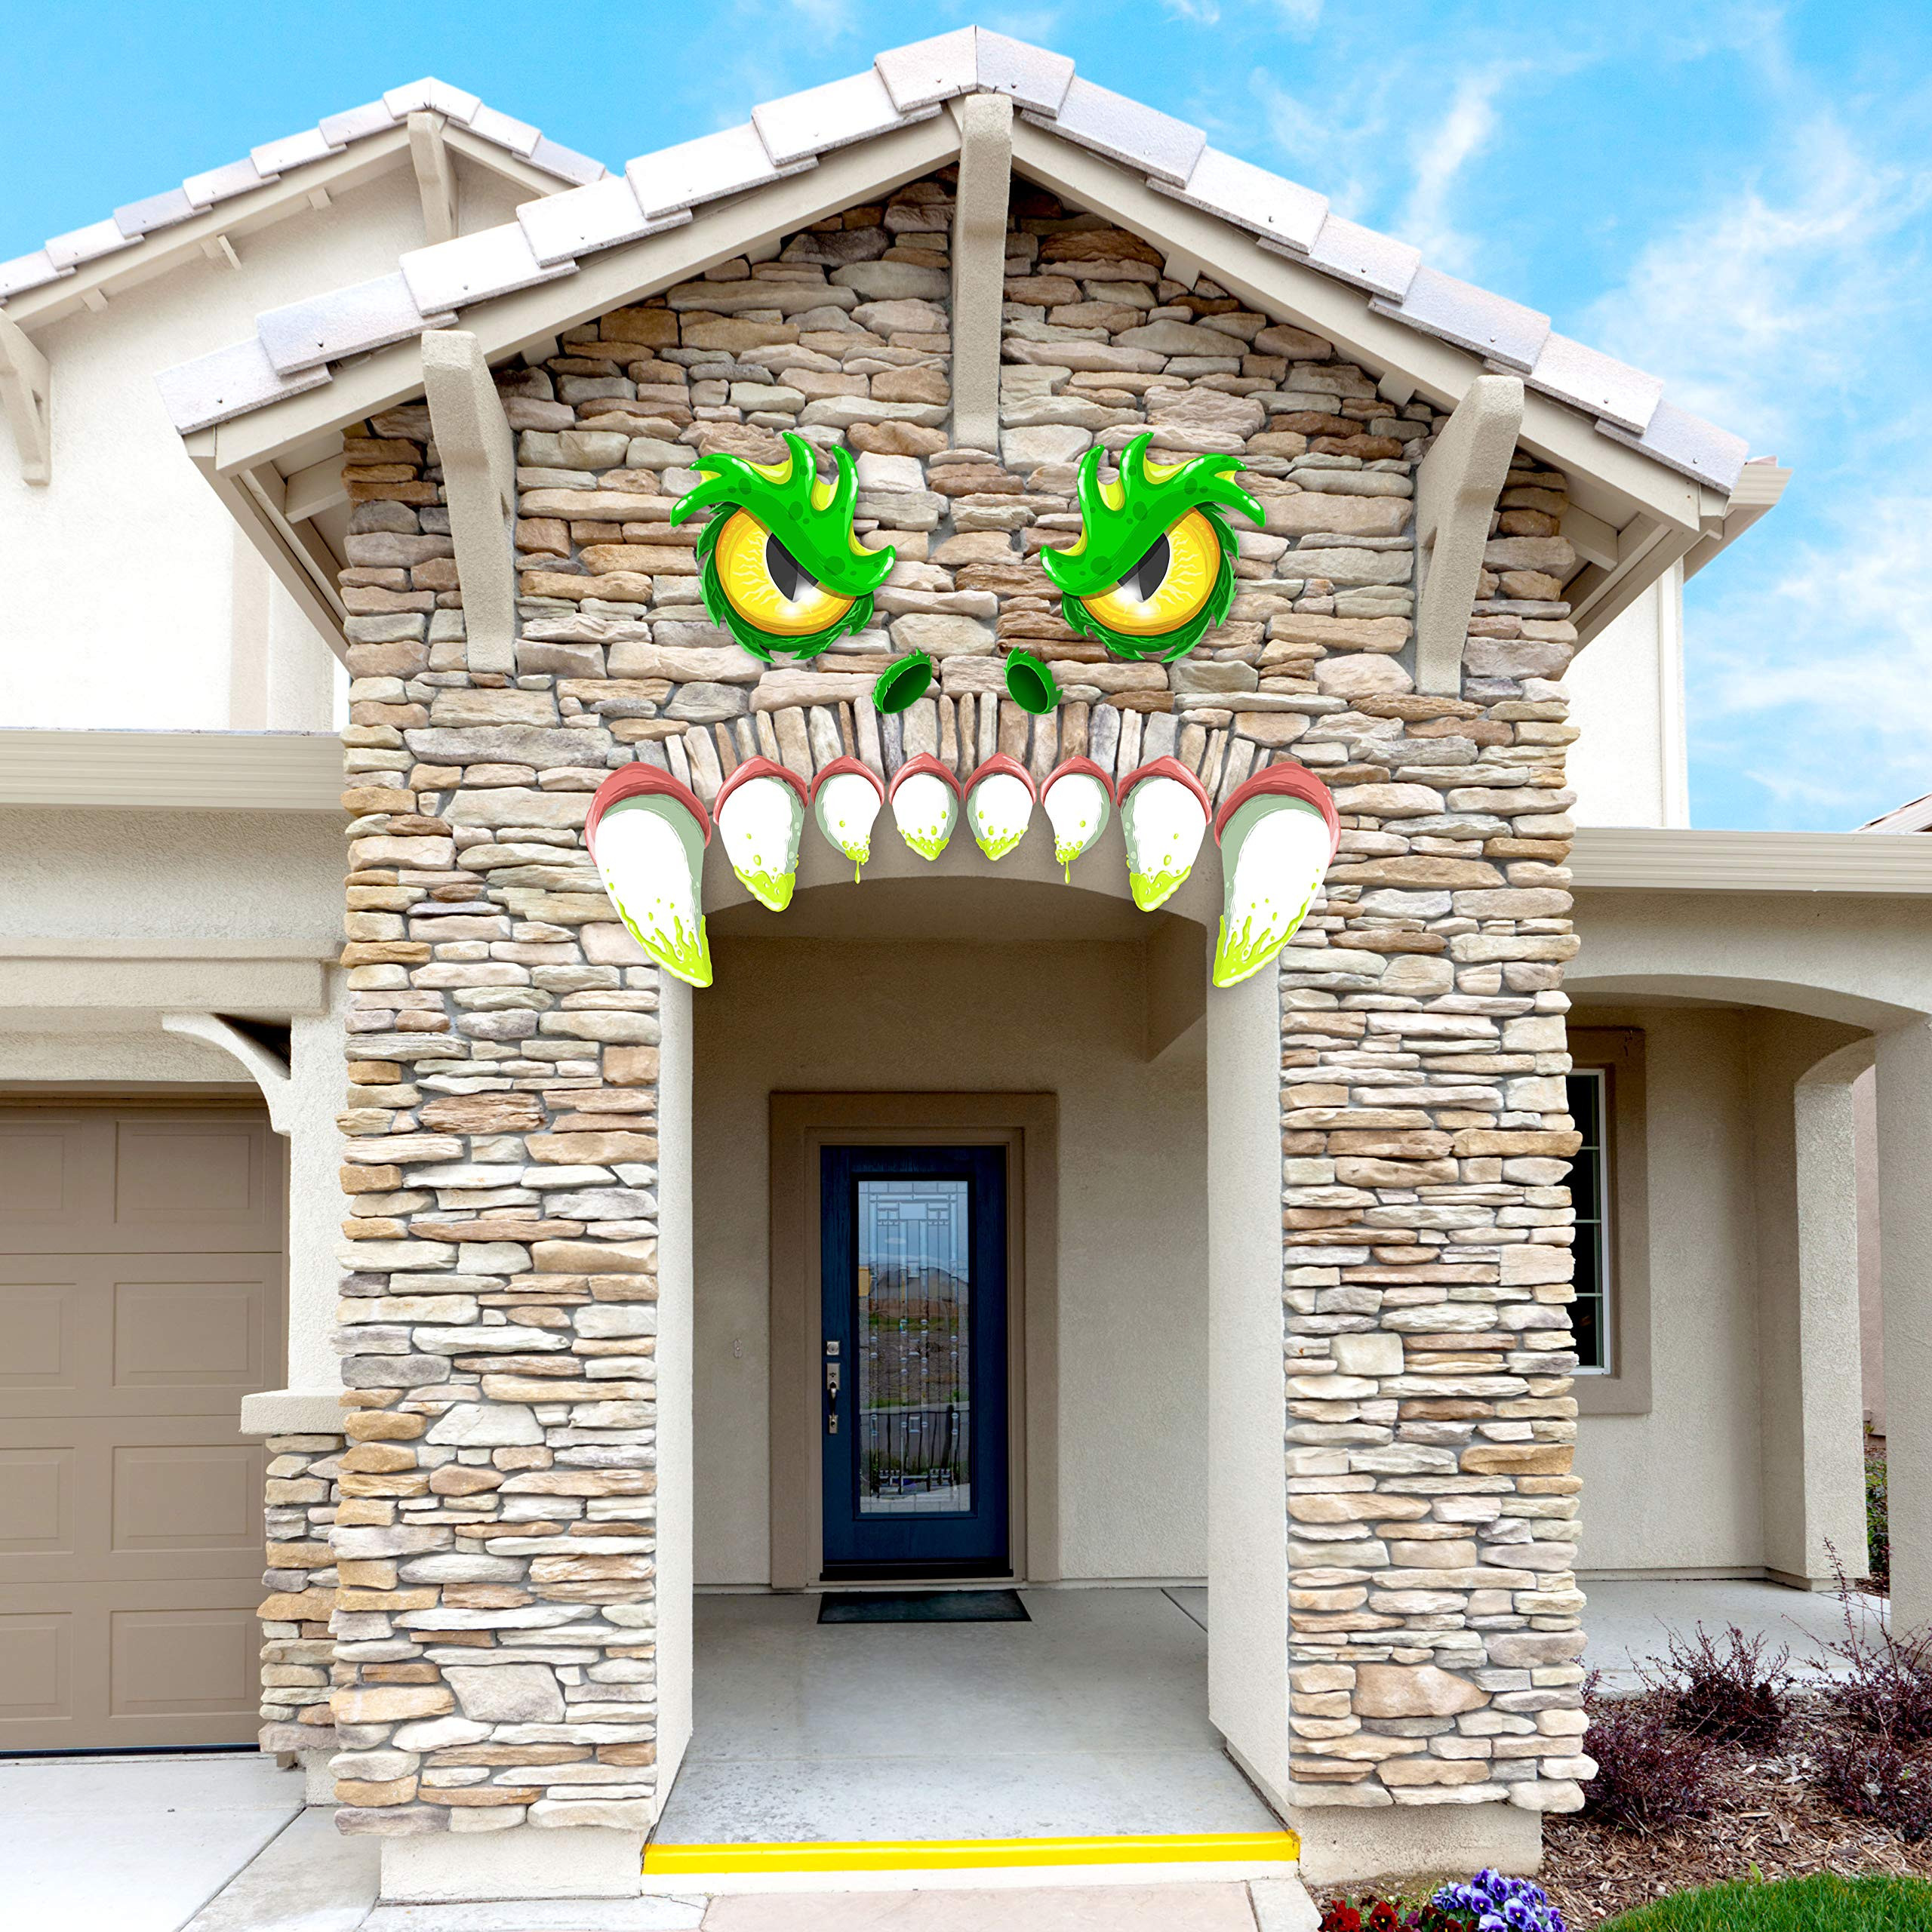 Garage Door Halloween Decoration
 JOYIN Monster Face Halloween Archway Garage Door